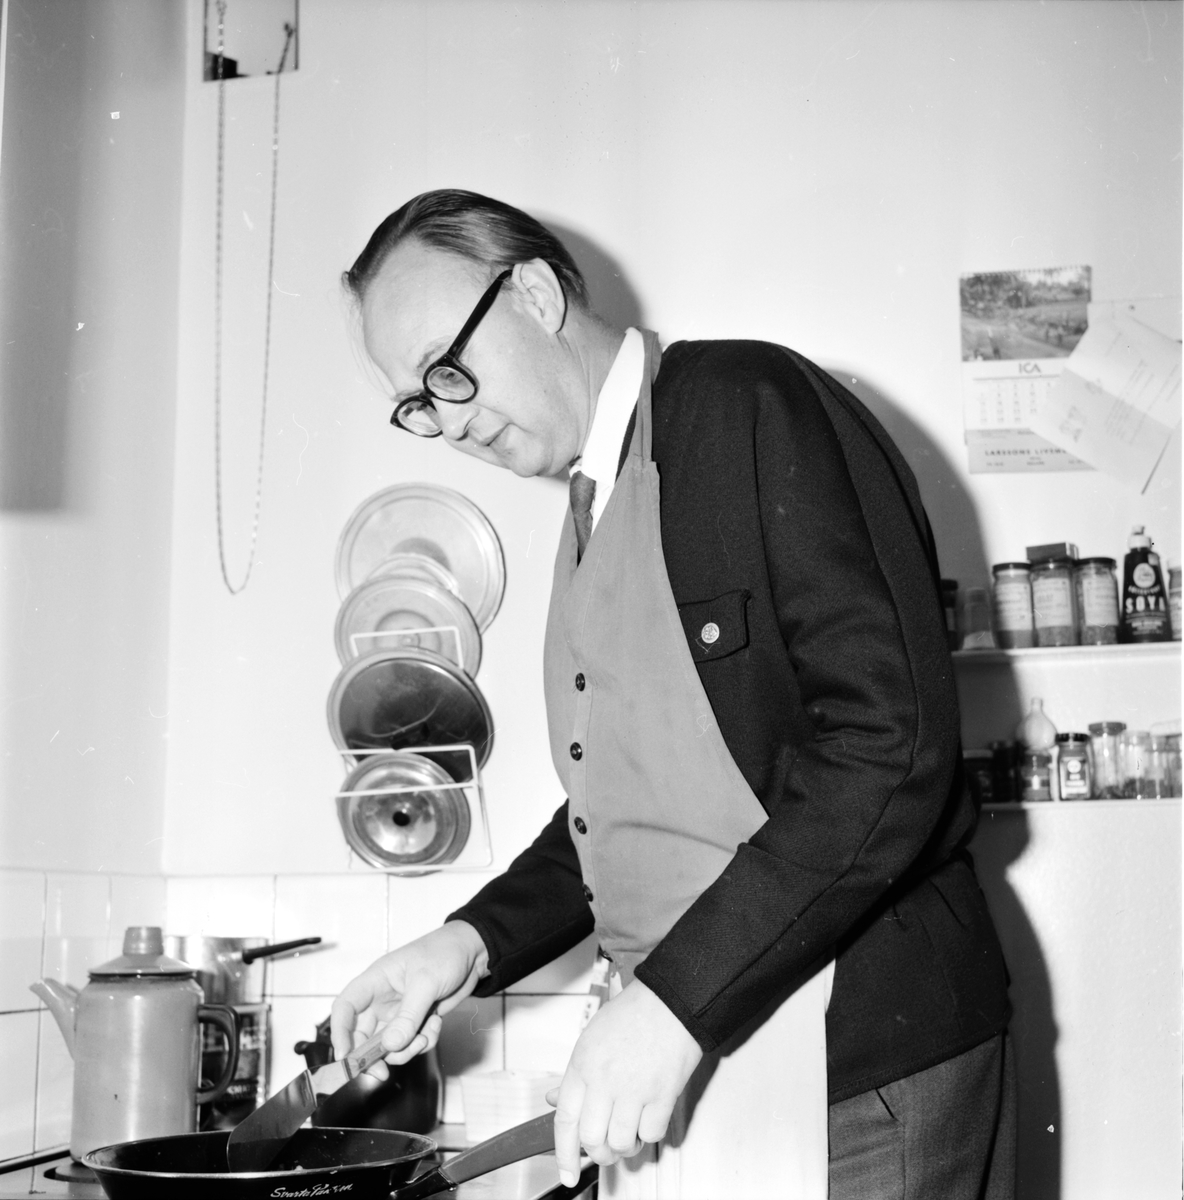 Män i hushållsarbete,
17 Nov 1965